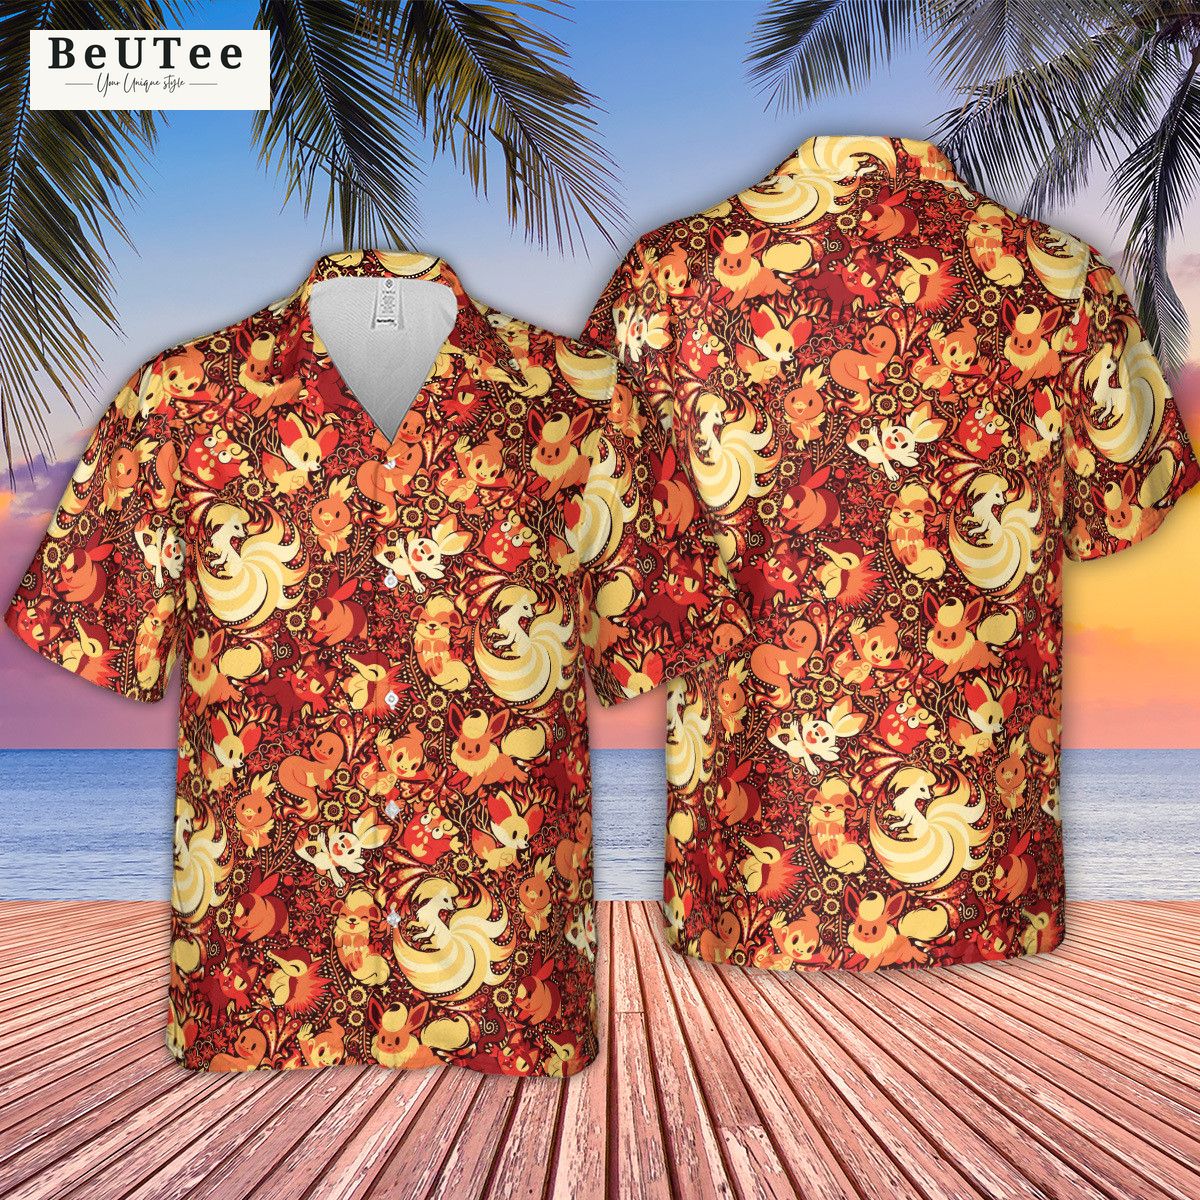 Tropical Fire Pokemon Hawaiian Shirt - CFM Store